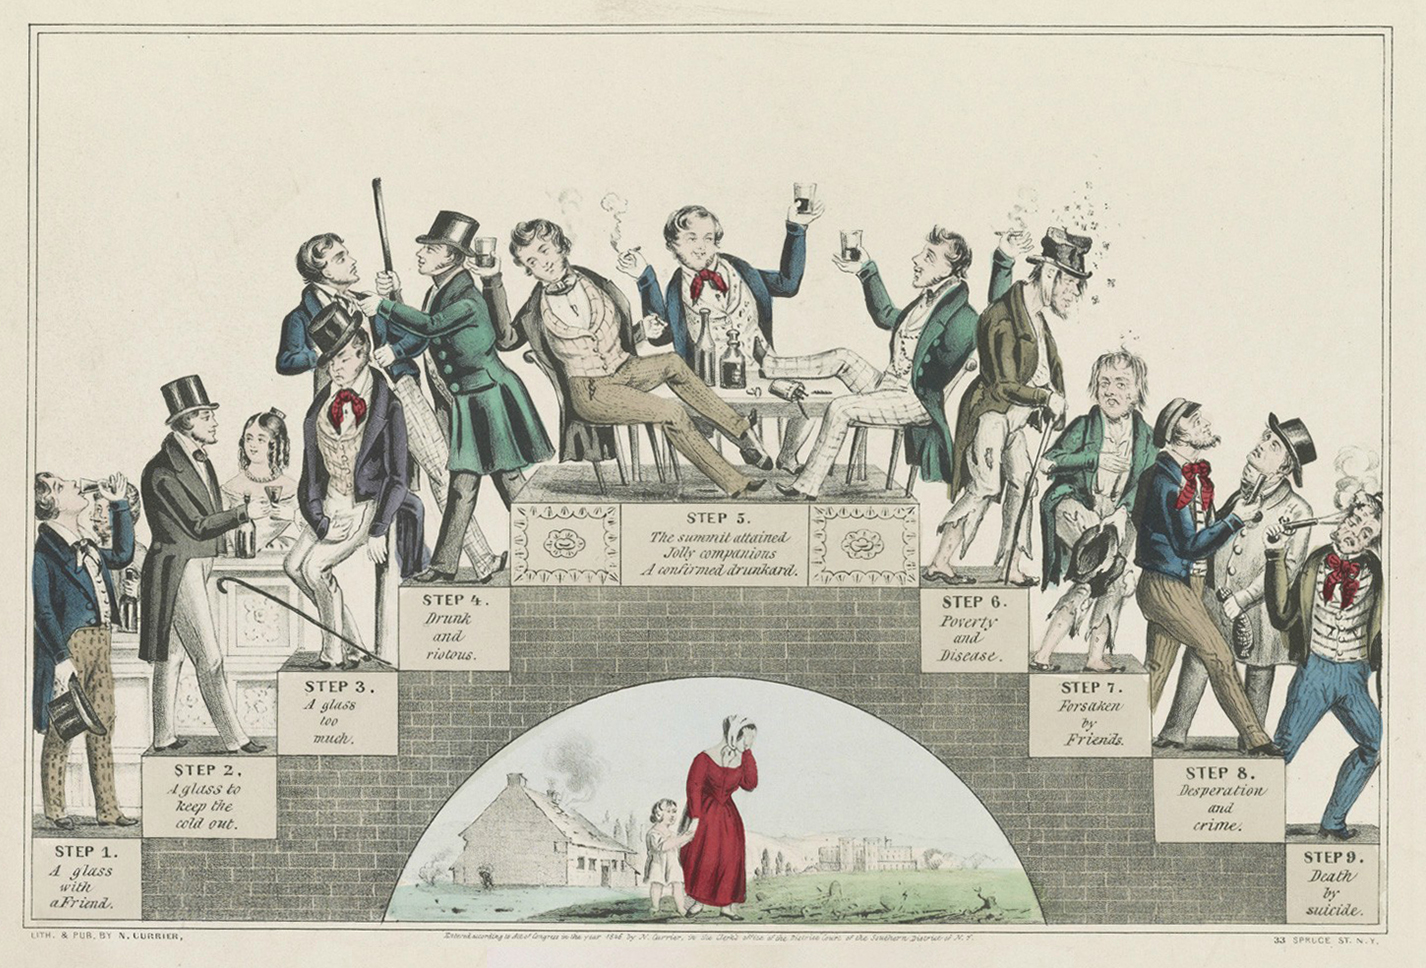 Một bản in thạch bản ủng hộ phong trào hạn chế rượu, “The Drunkard’s Progress: From the First Glass to the Grave” (Tiến Trình Của Người Nghiện Rượu: Từ Ly Đầu Tiên Cho Đến Mộ Phần) của họa sĩ Nathaniel Currier vẽ khoảng năm 1846. Thư viện Quốc hội. (Ảnh: Tài liệu công cộng)